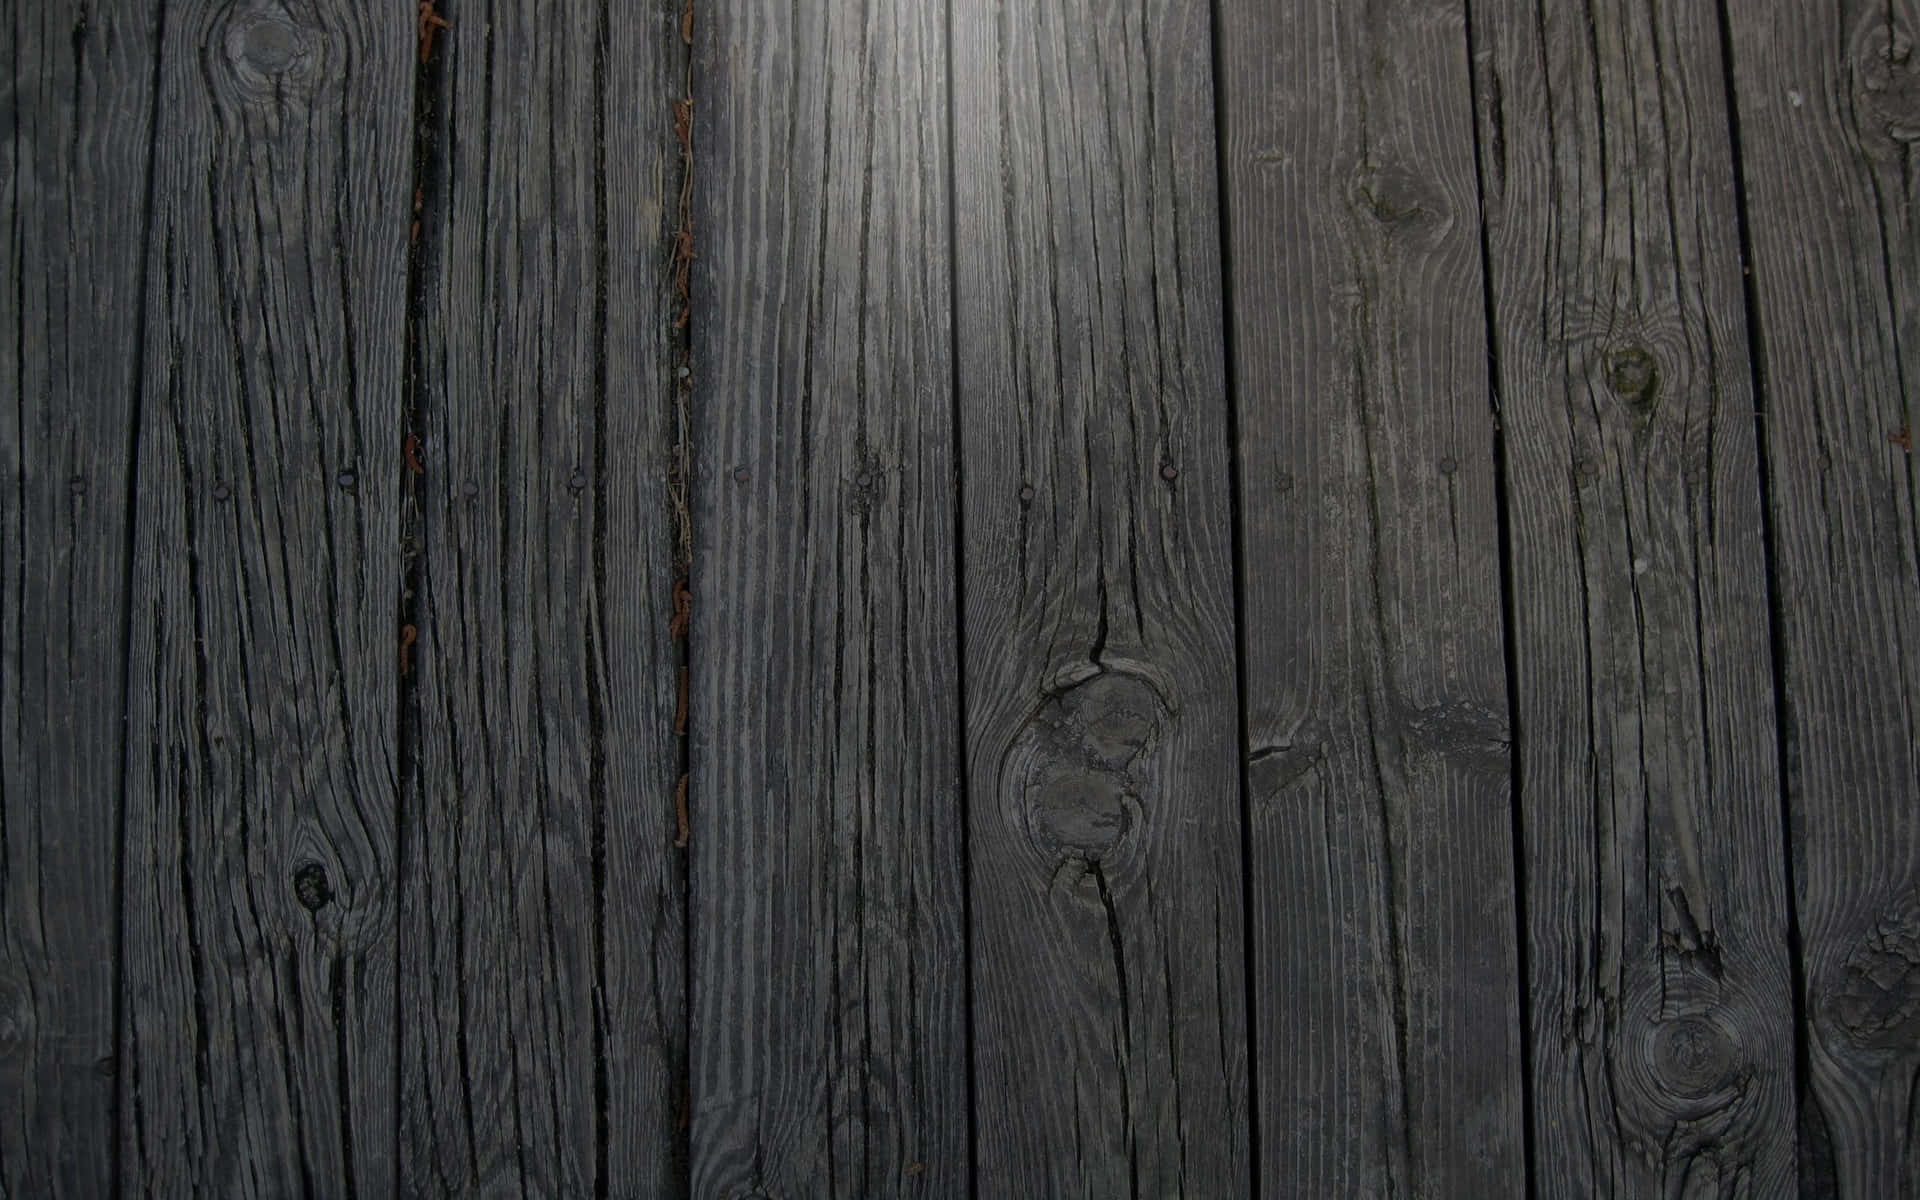 Ashy Floorboards Wooden Background Design